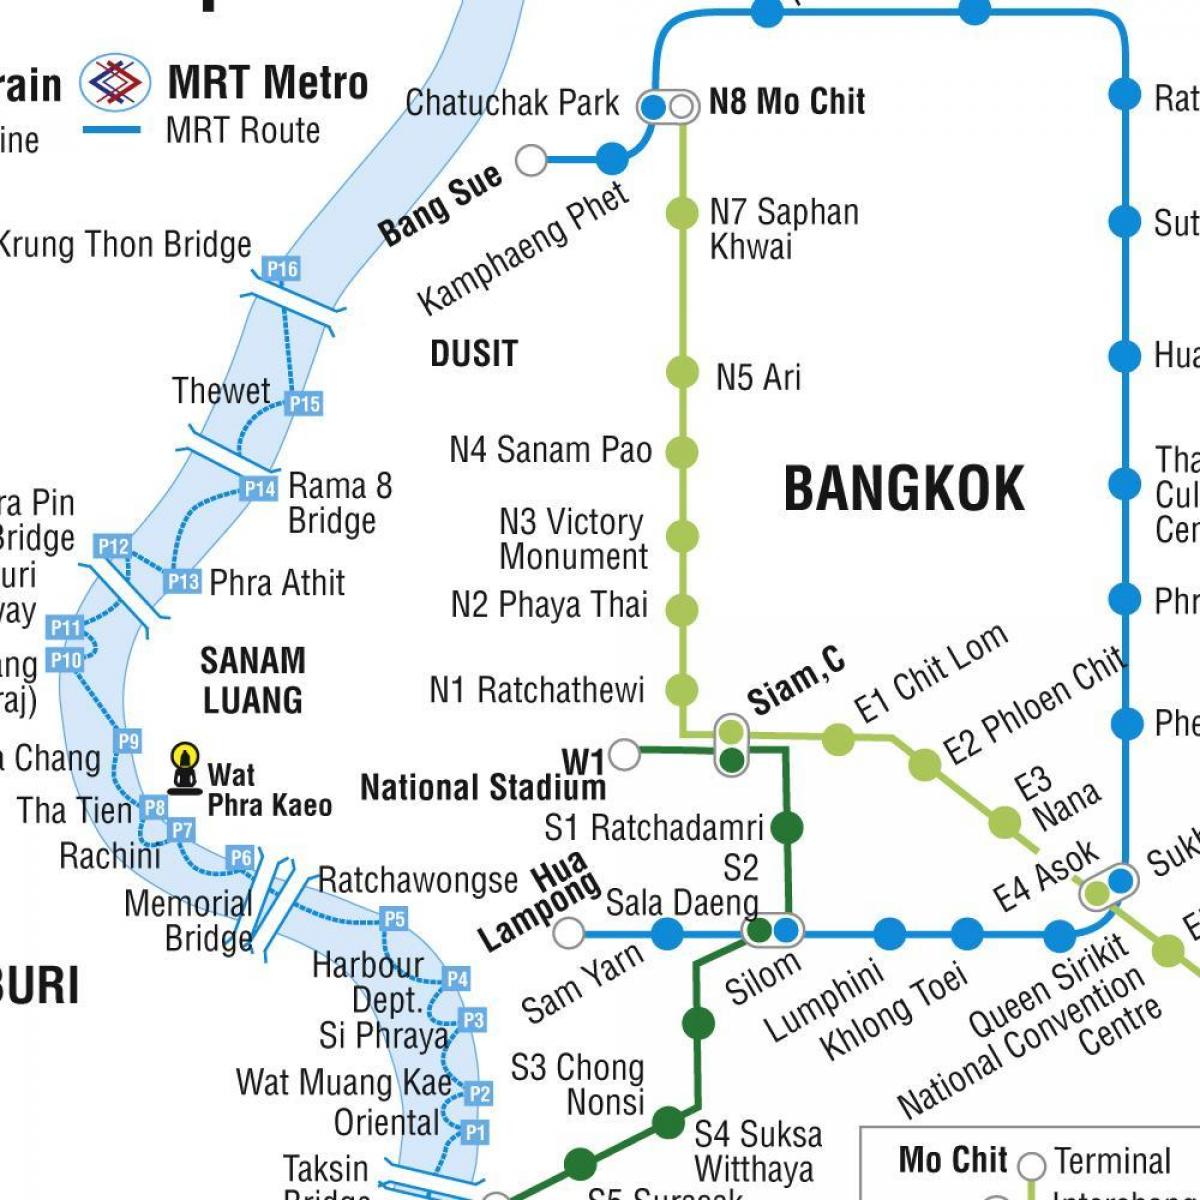 kort over bangkok metro-og skytrain -